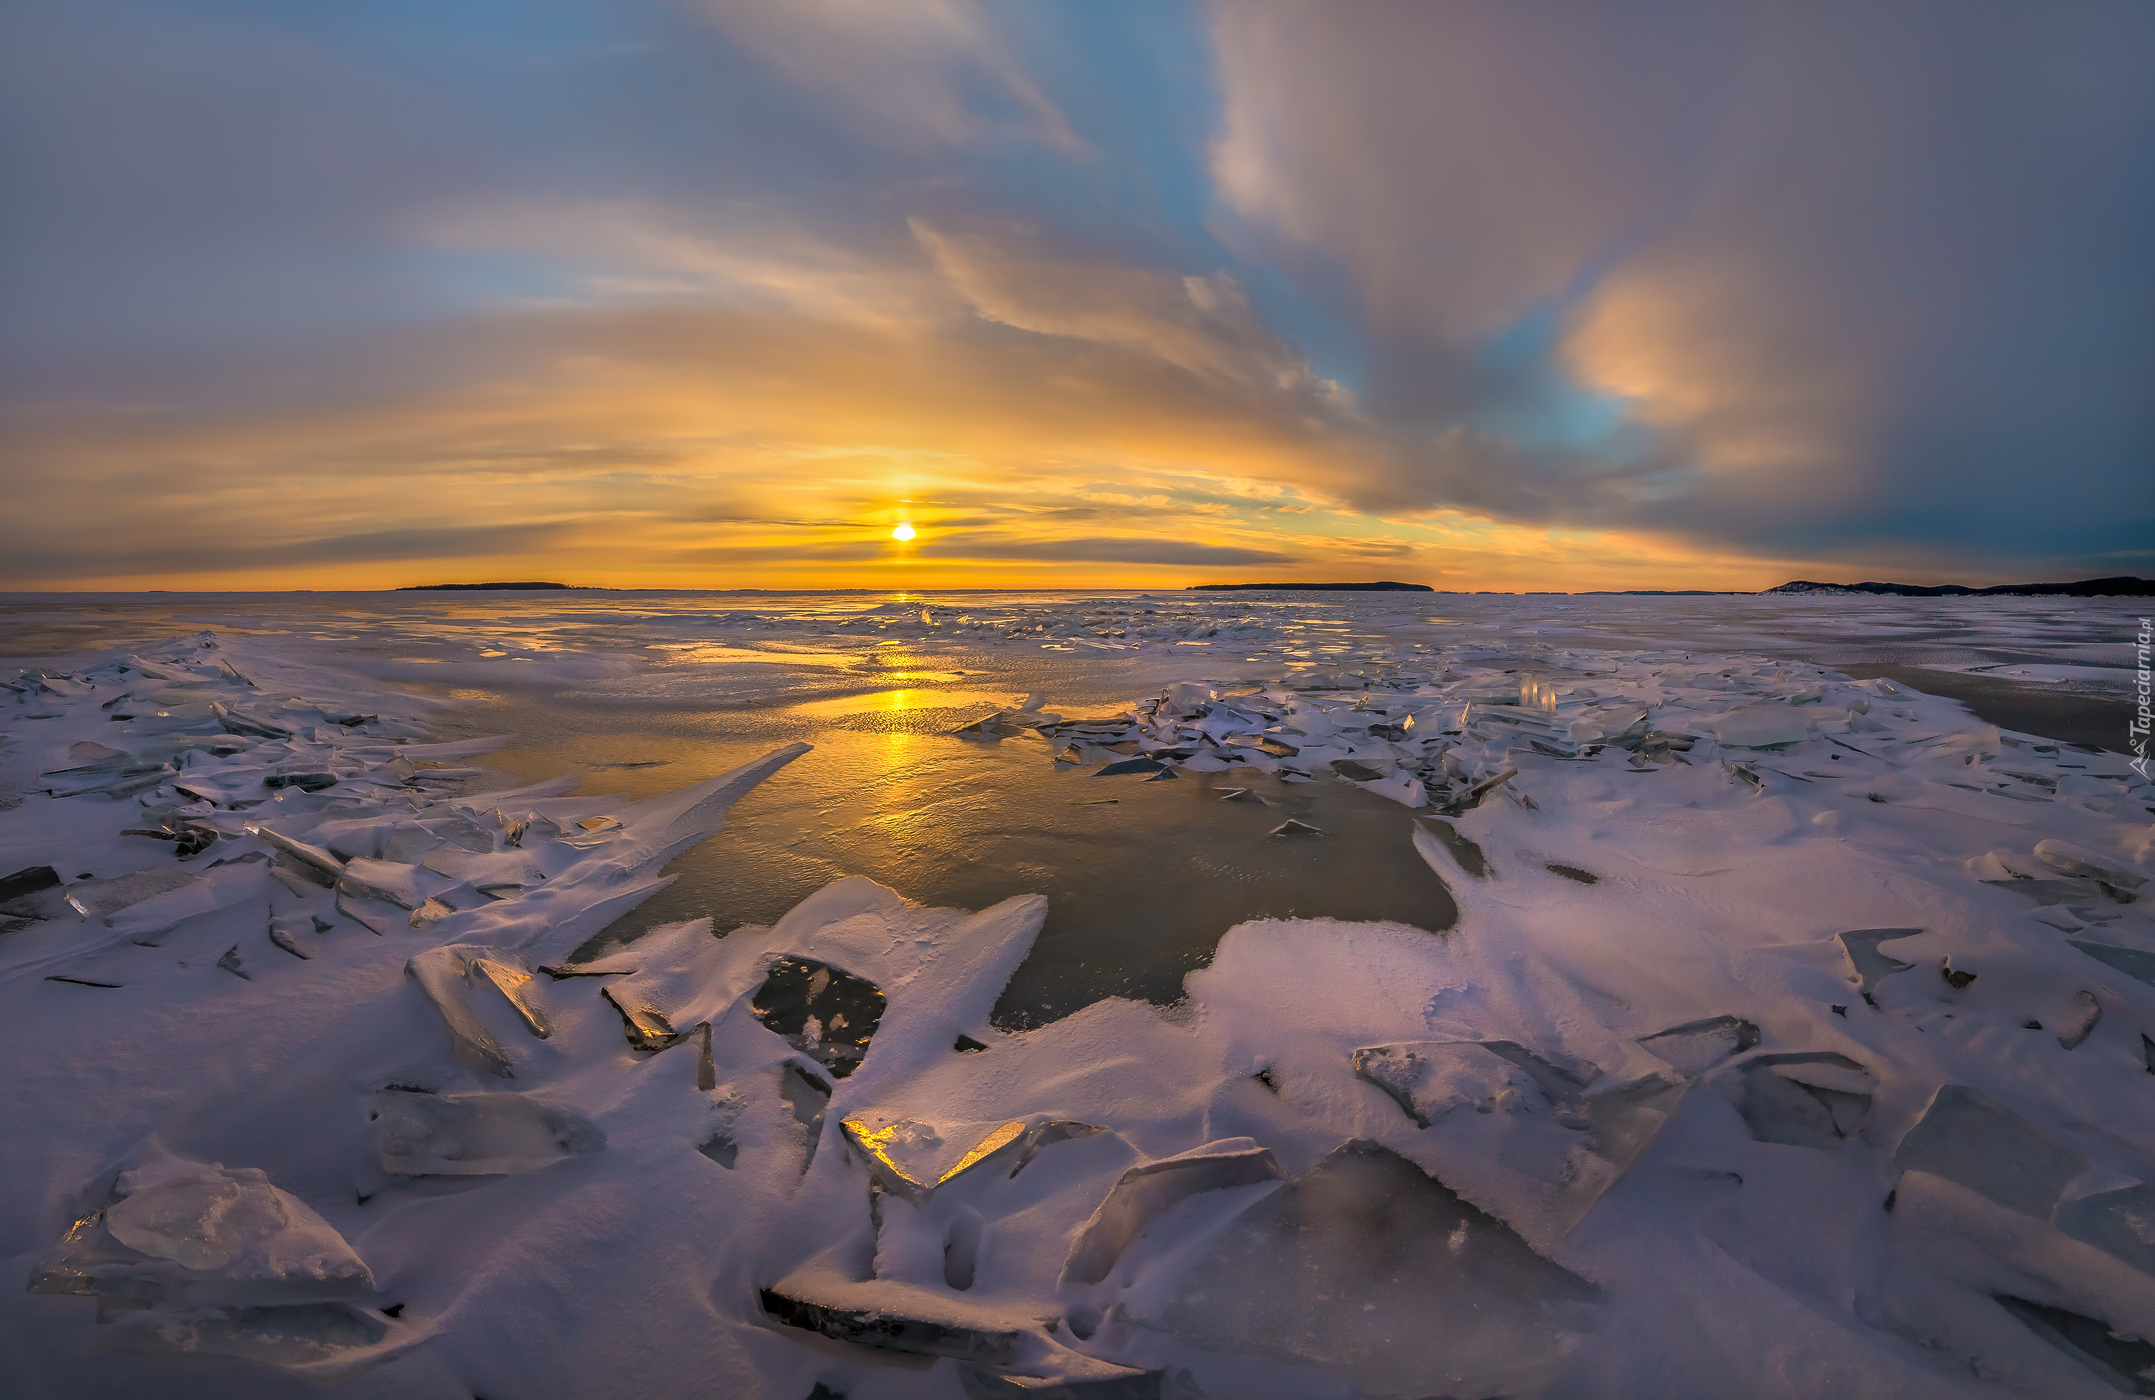 Jezioro Ładoga, Zima, Lód, Wschód słońca, Chmury, Karelia, Rosja